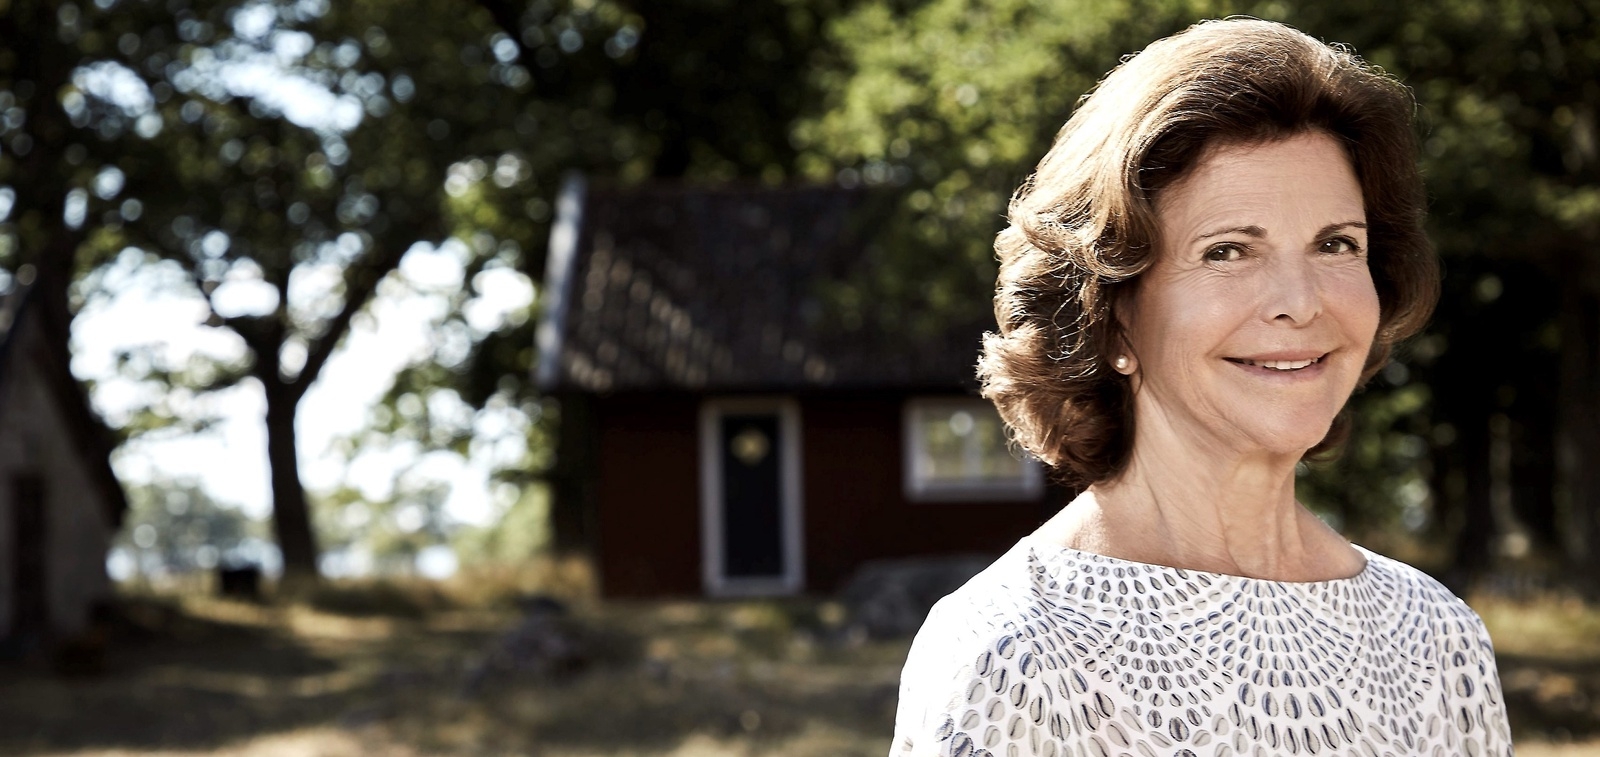 I morgon, den 23 december, fyller landets drottning Silvia 75 år.
Foto: Anna-Lena Ahlström, kungliga hovstaterna